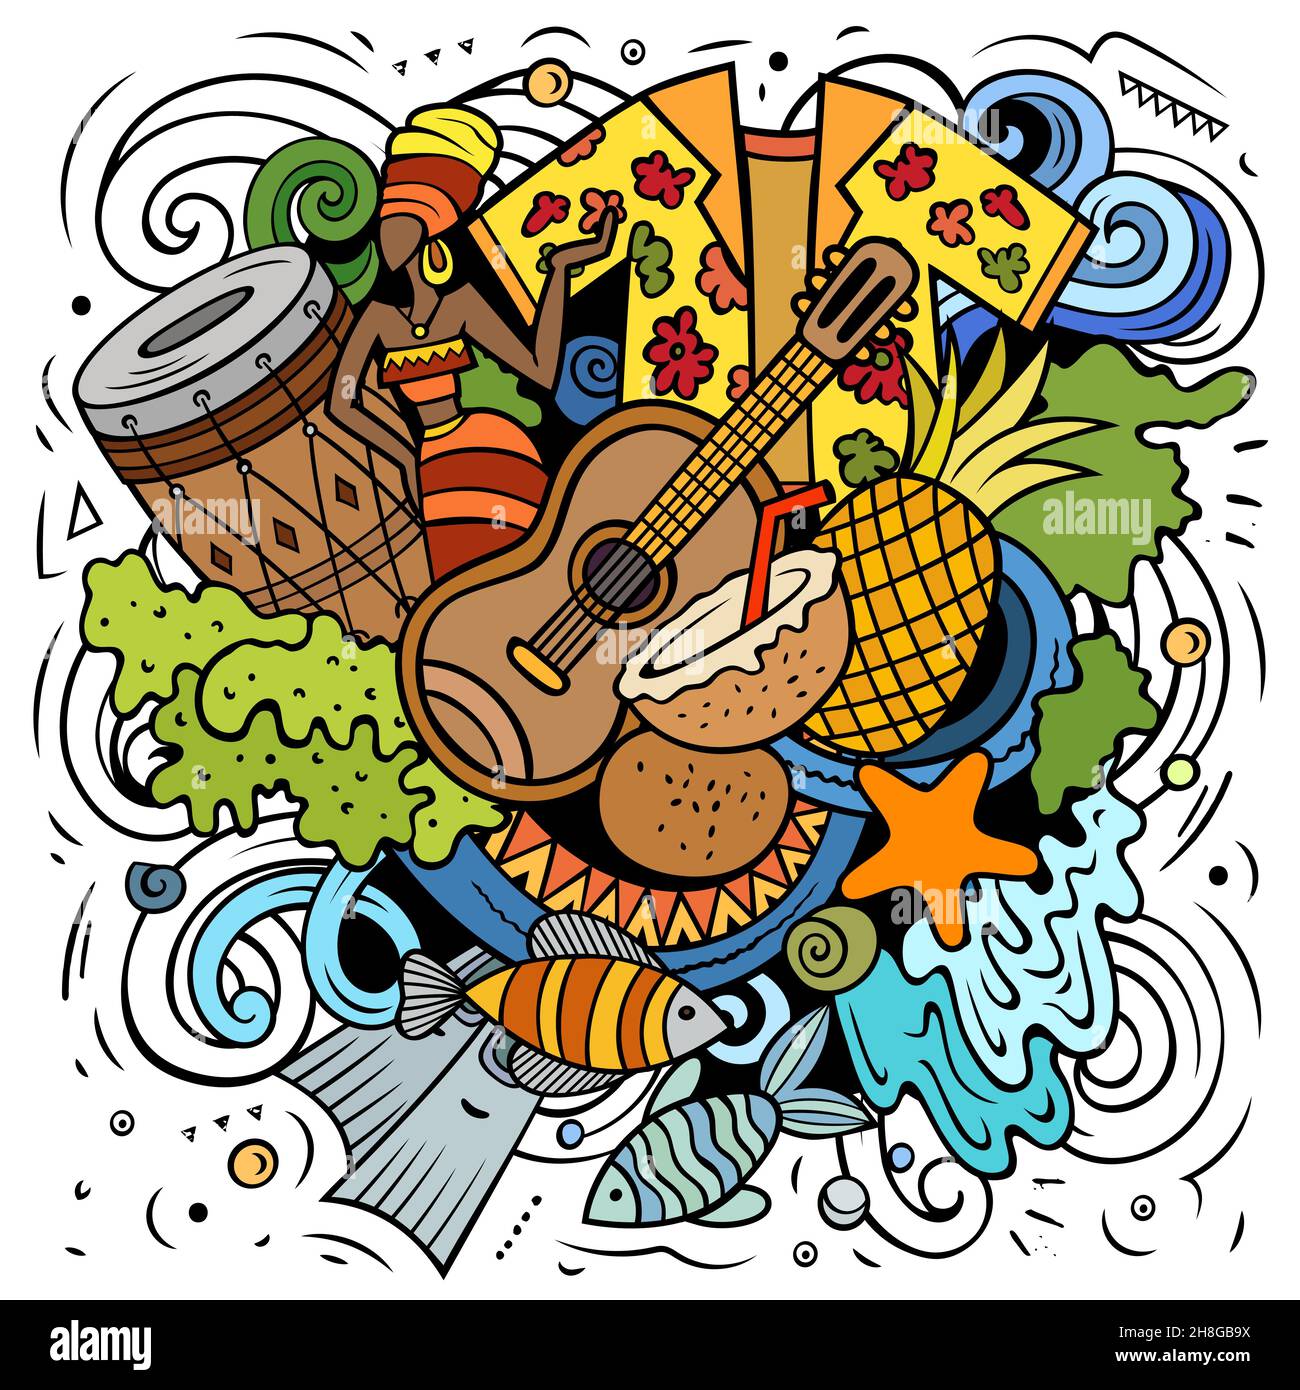 Illustrazione di fumetto vettoriale di Figi. Composizione colorata e dettagliata con molti oggetti e simboli esotici dell'isola. Illustrazione Vettoriale